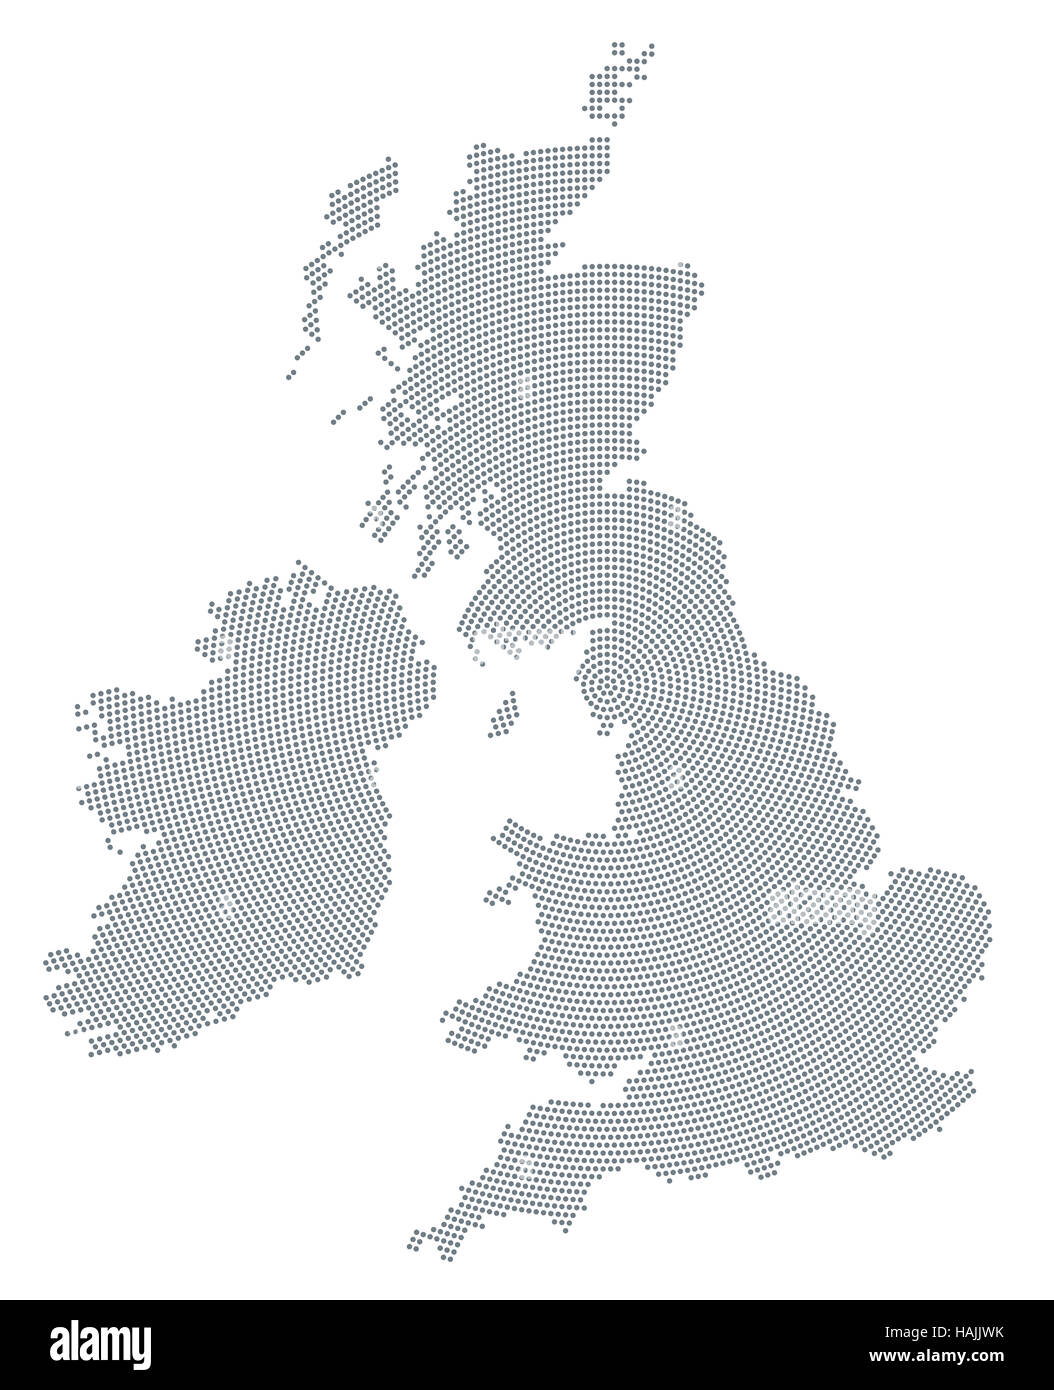 Carte des îles Britanniques point motif radial. Les points gris allant du centre formant les silhouettes d'Irlande et Royaume-Uni. Banque D'Images